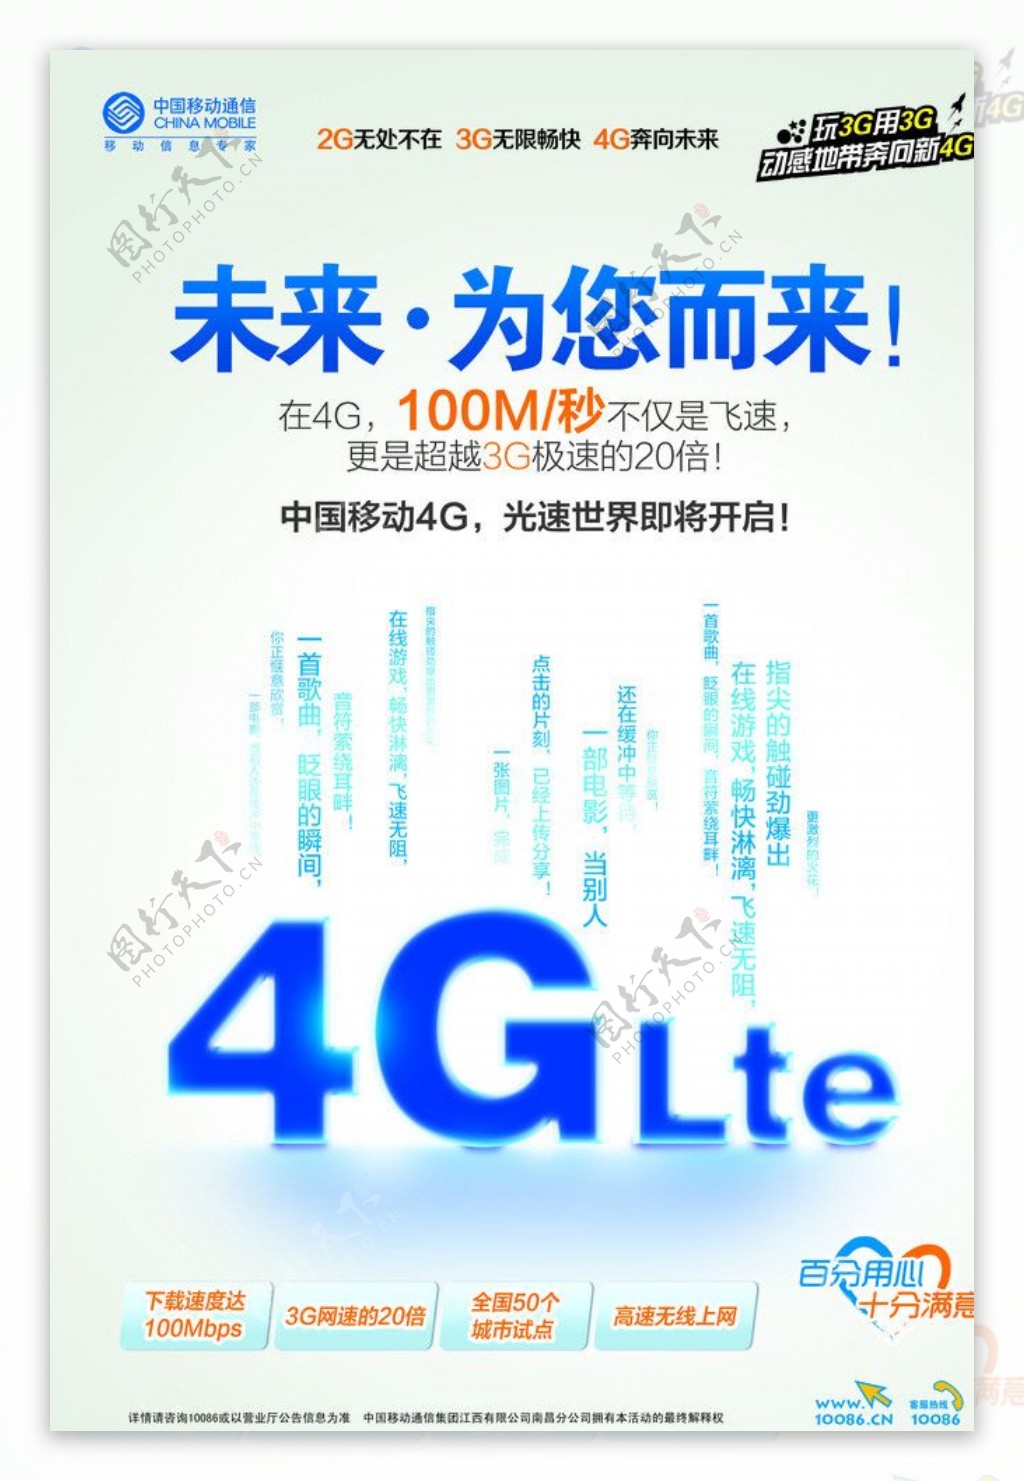 中国移动4G网络宣传图片